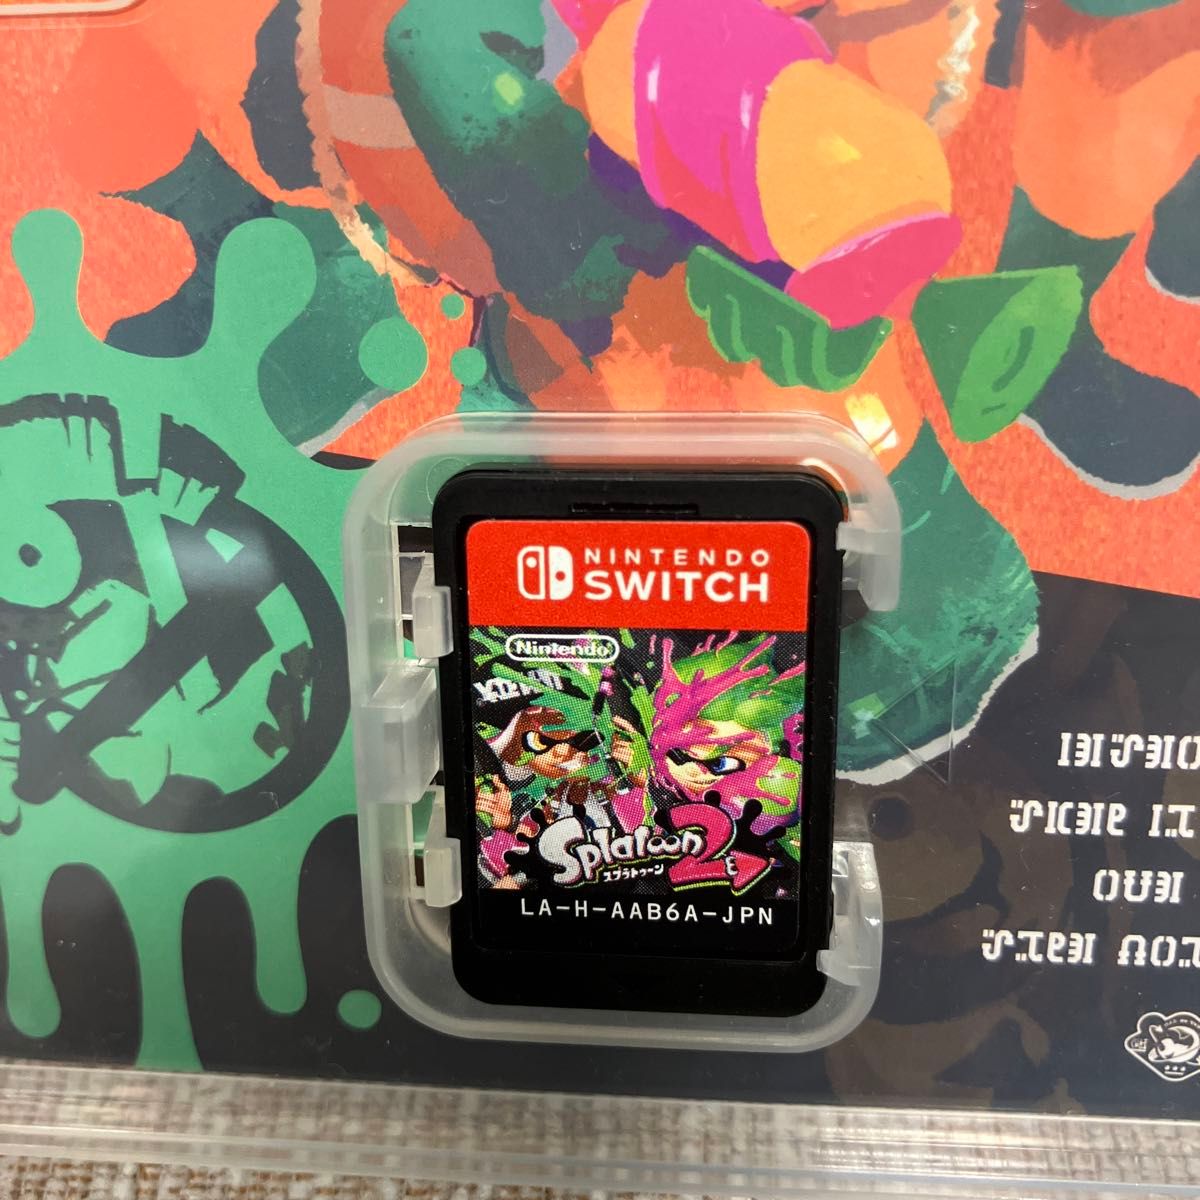 スプラトゥーン2 Switch ソフト ニンテンドースイッチ Nintendo